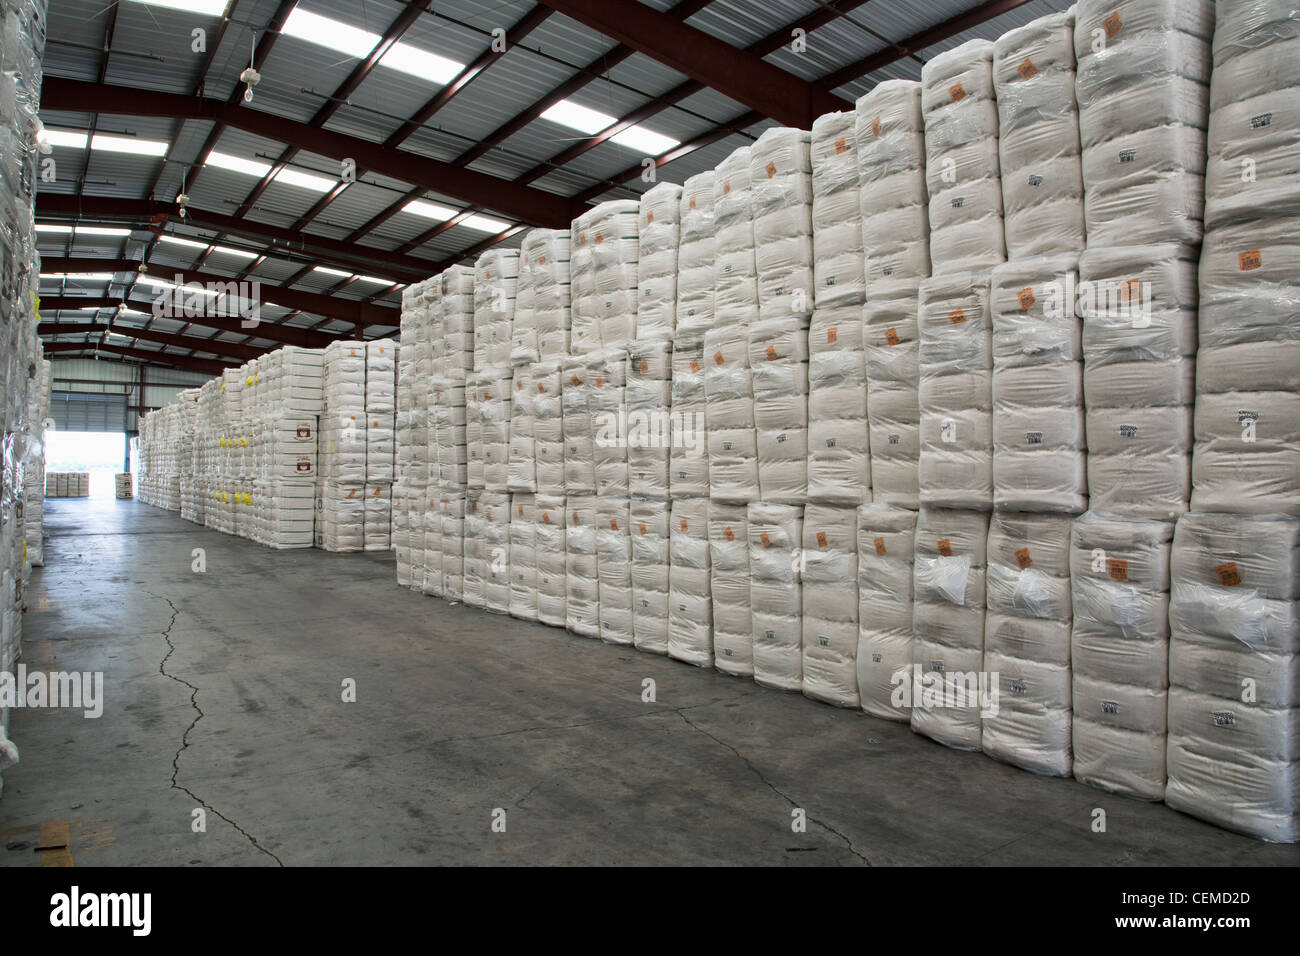 Agriculture - balles de coton empilés et stockés dans un entrepôt / est de l'Arkansas, USA. Banque D'Images